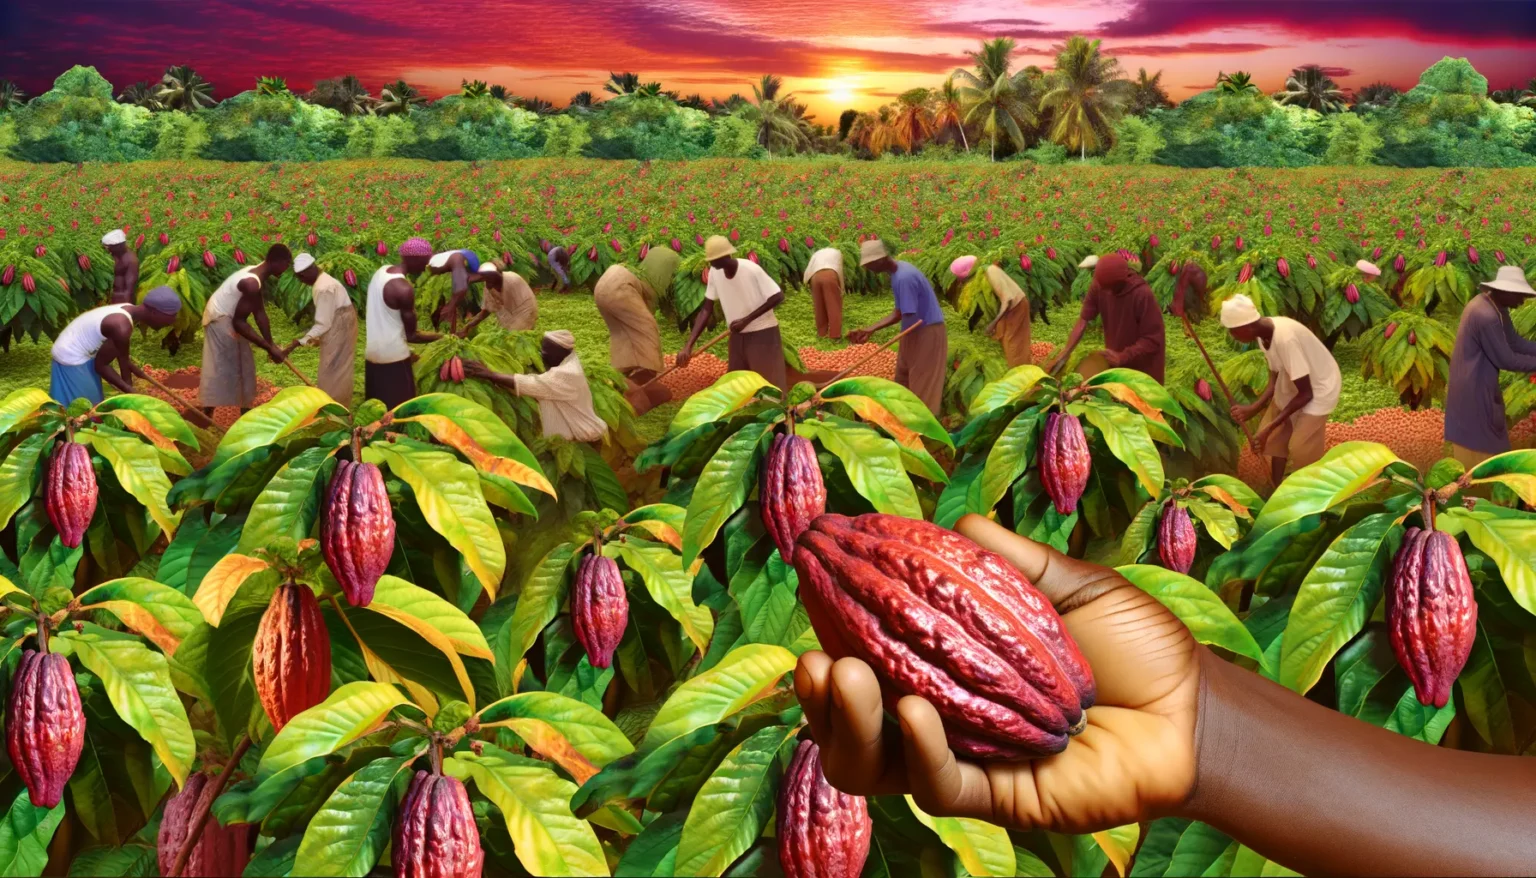 Eine Gruppe von Menschen erntet Kakao in einem Feld, wobei der Fokus auf einer ausgestreckten Hand liegt, die eine rote Kakaofrucht hält. Im Hintergrund ist ein malerischer Himmel mit Sonnenuntergang zu sehen.